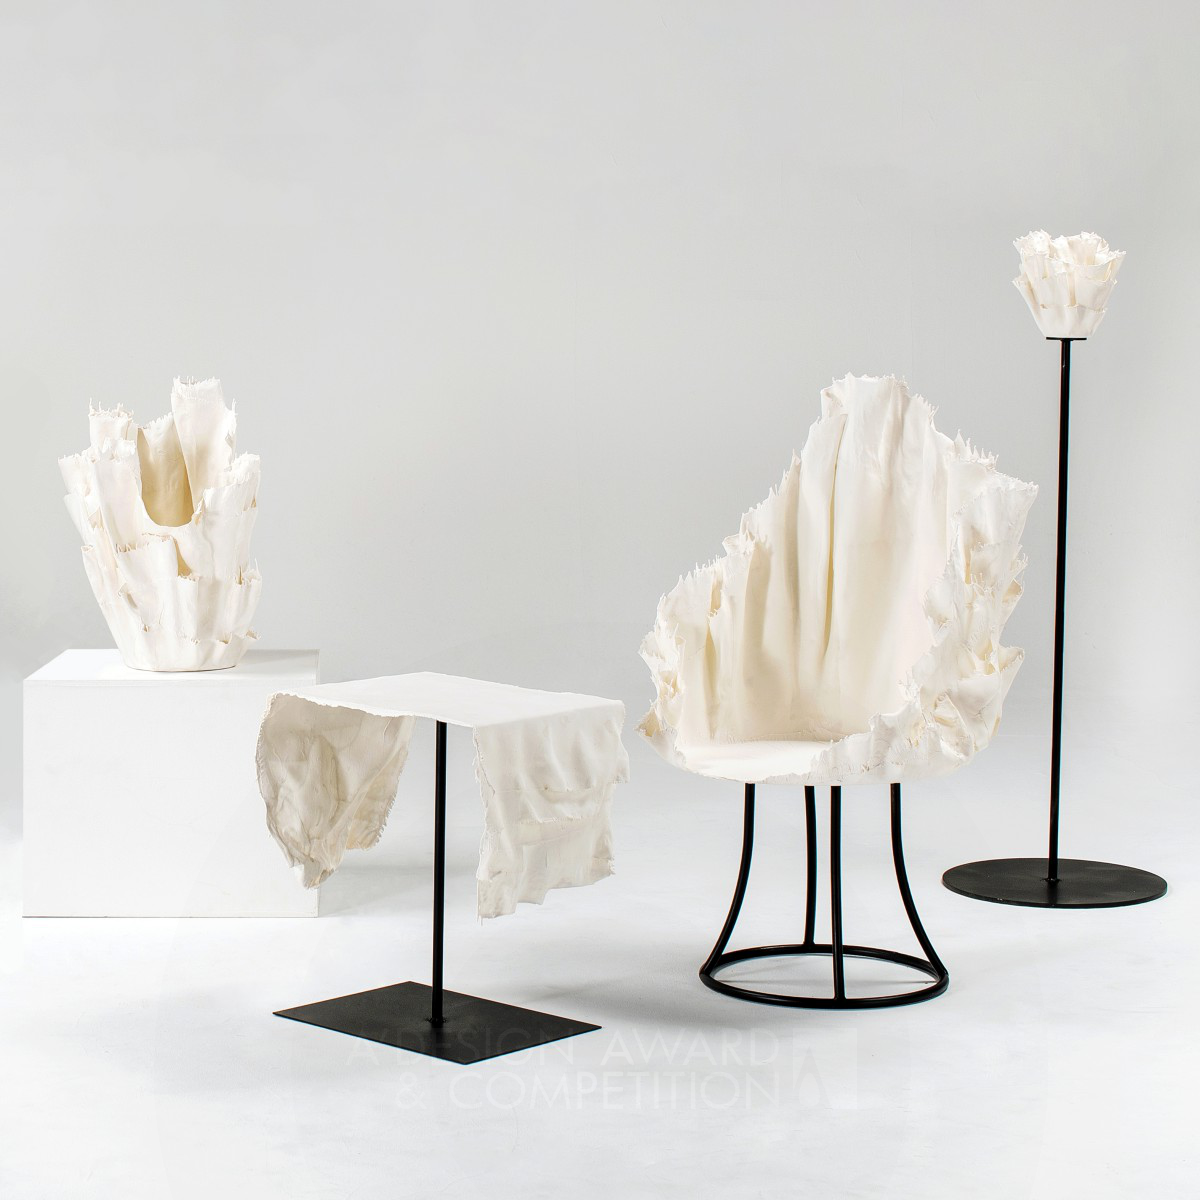 Dress: Eine einzigartige Porzellanmöbelkollektion von Masahiro Kito